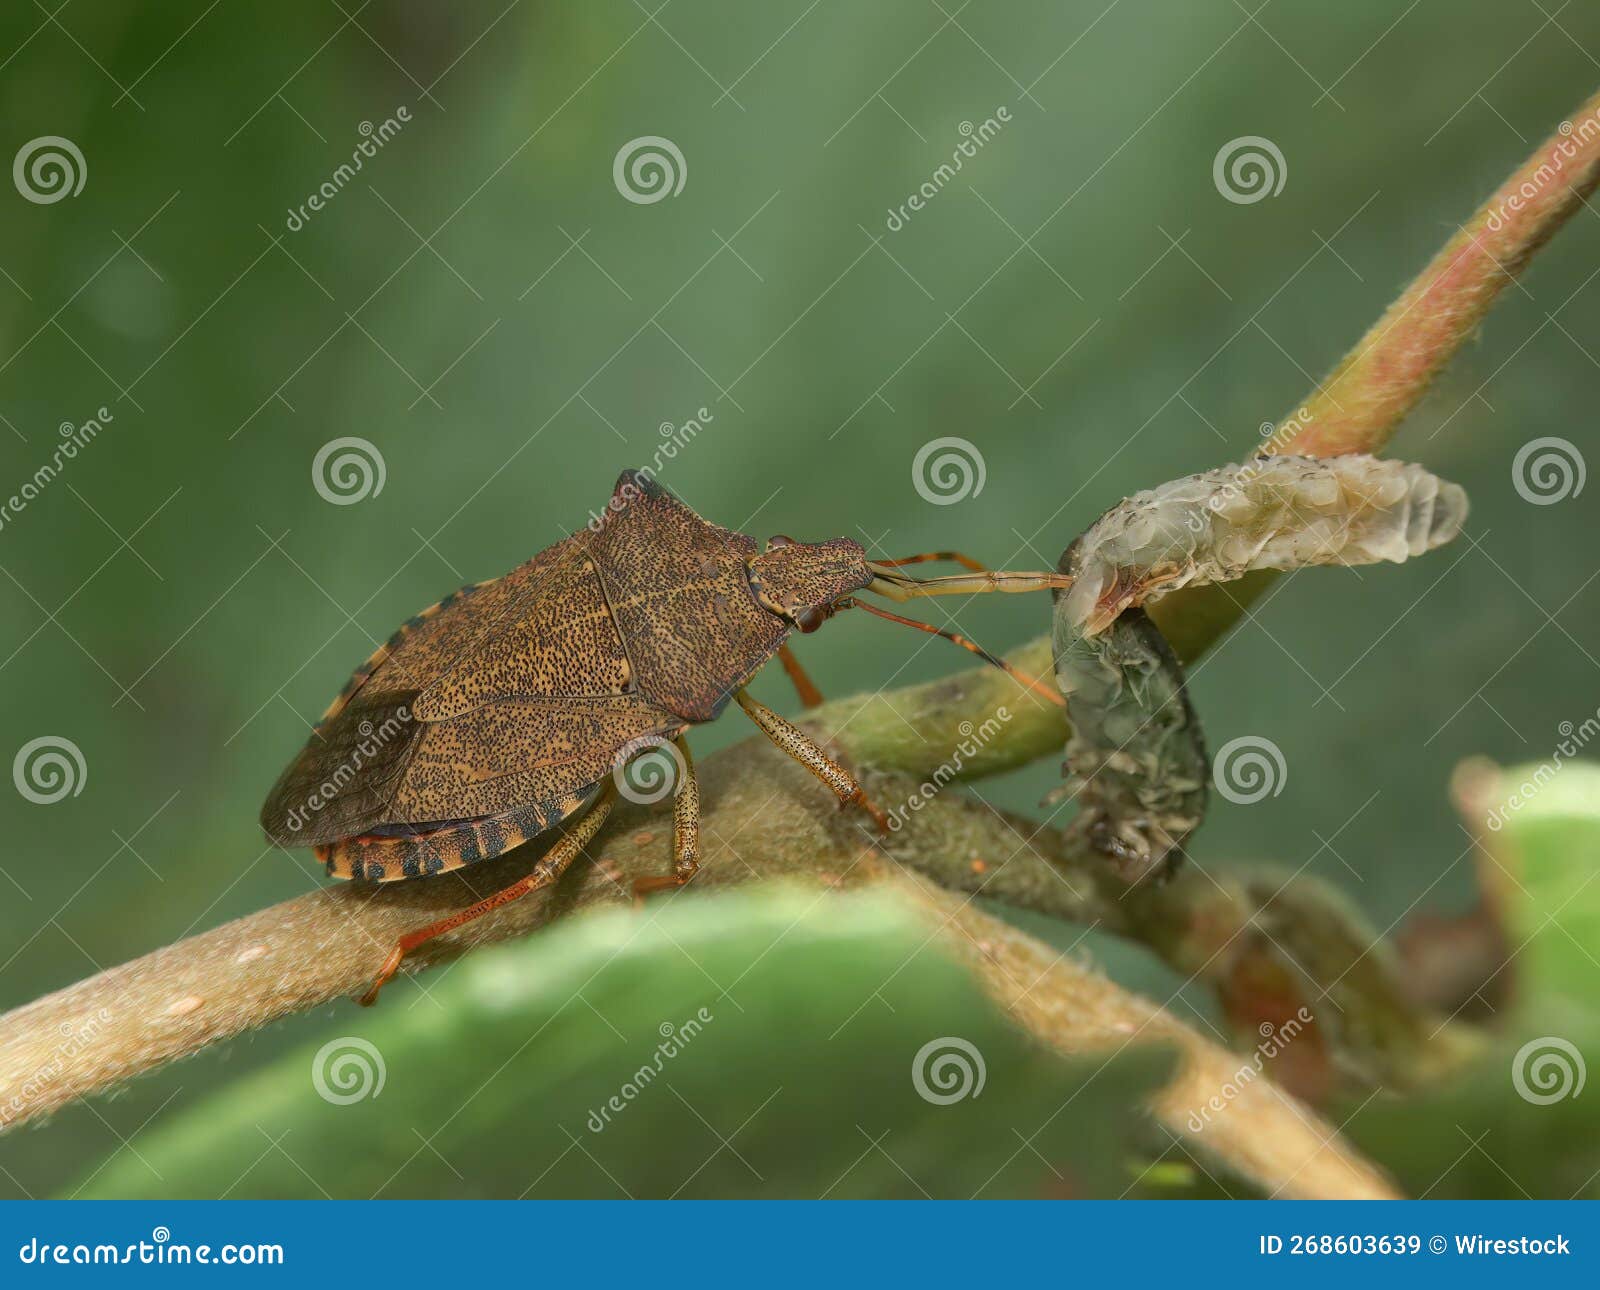 closeup on the brown dock leaf bug, arma custos eating a caterpillar